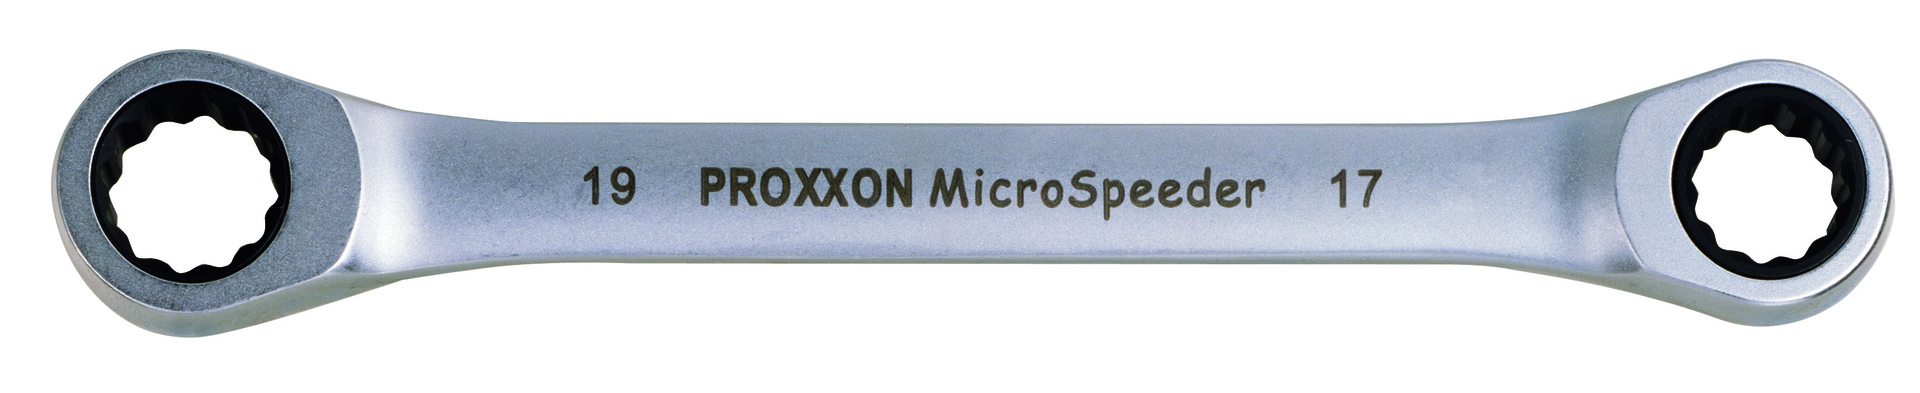 Proxxon Micro-Speeder Ratschenschlüssel 8x9mm